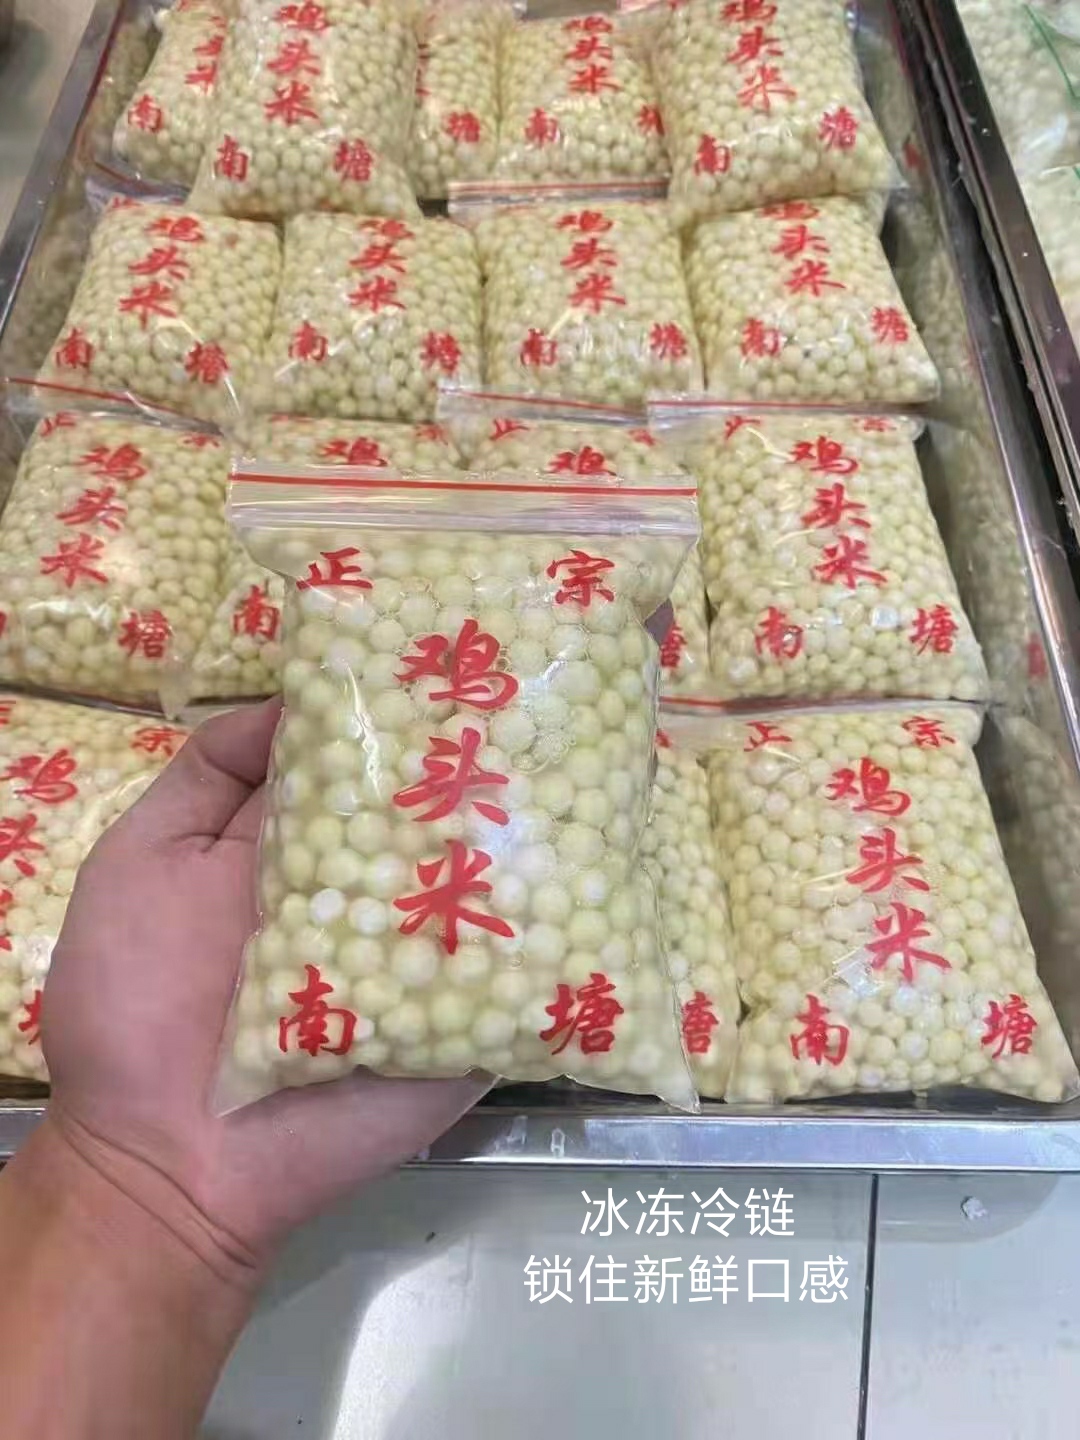 鸡头米 芡实 水米 新鲜苏州苏芡农家基地自产